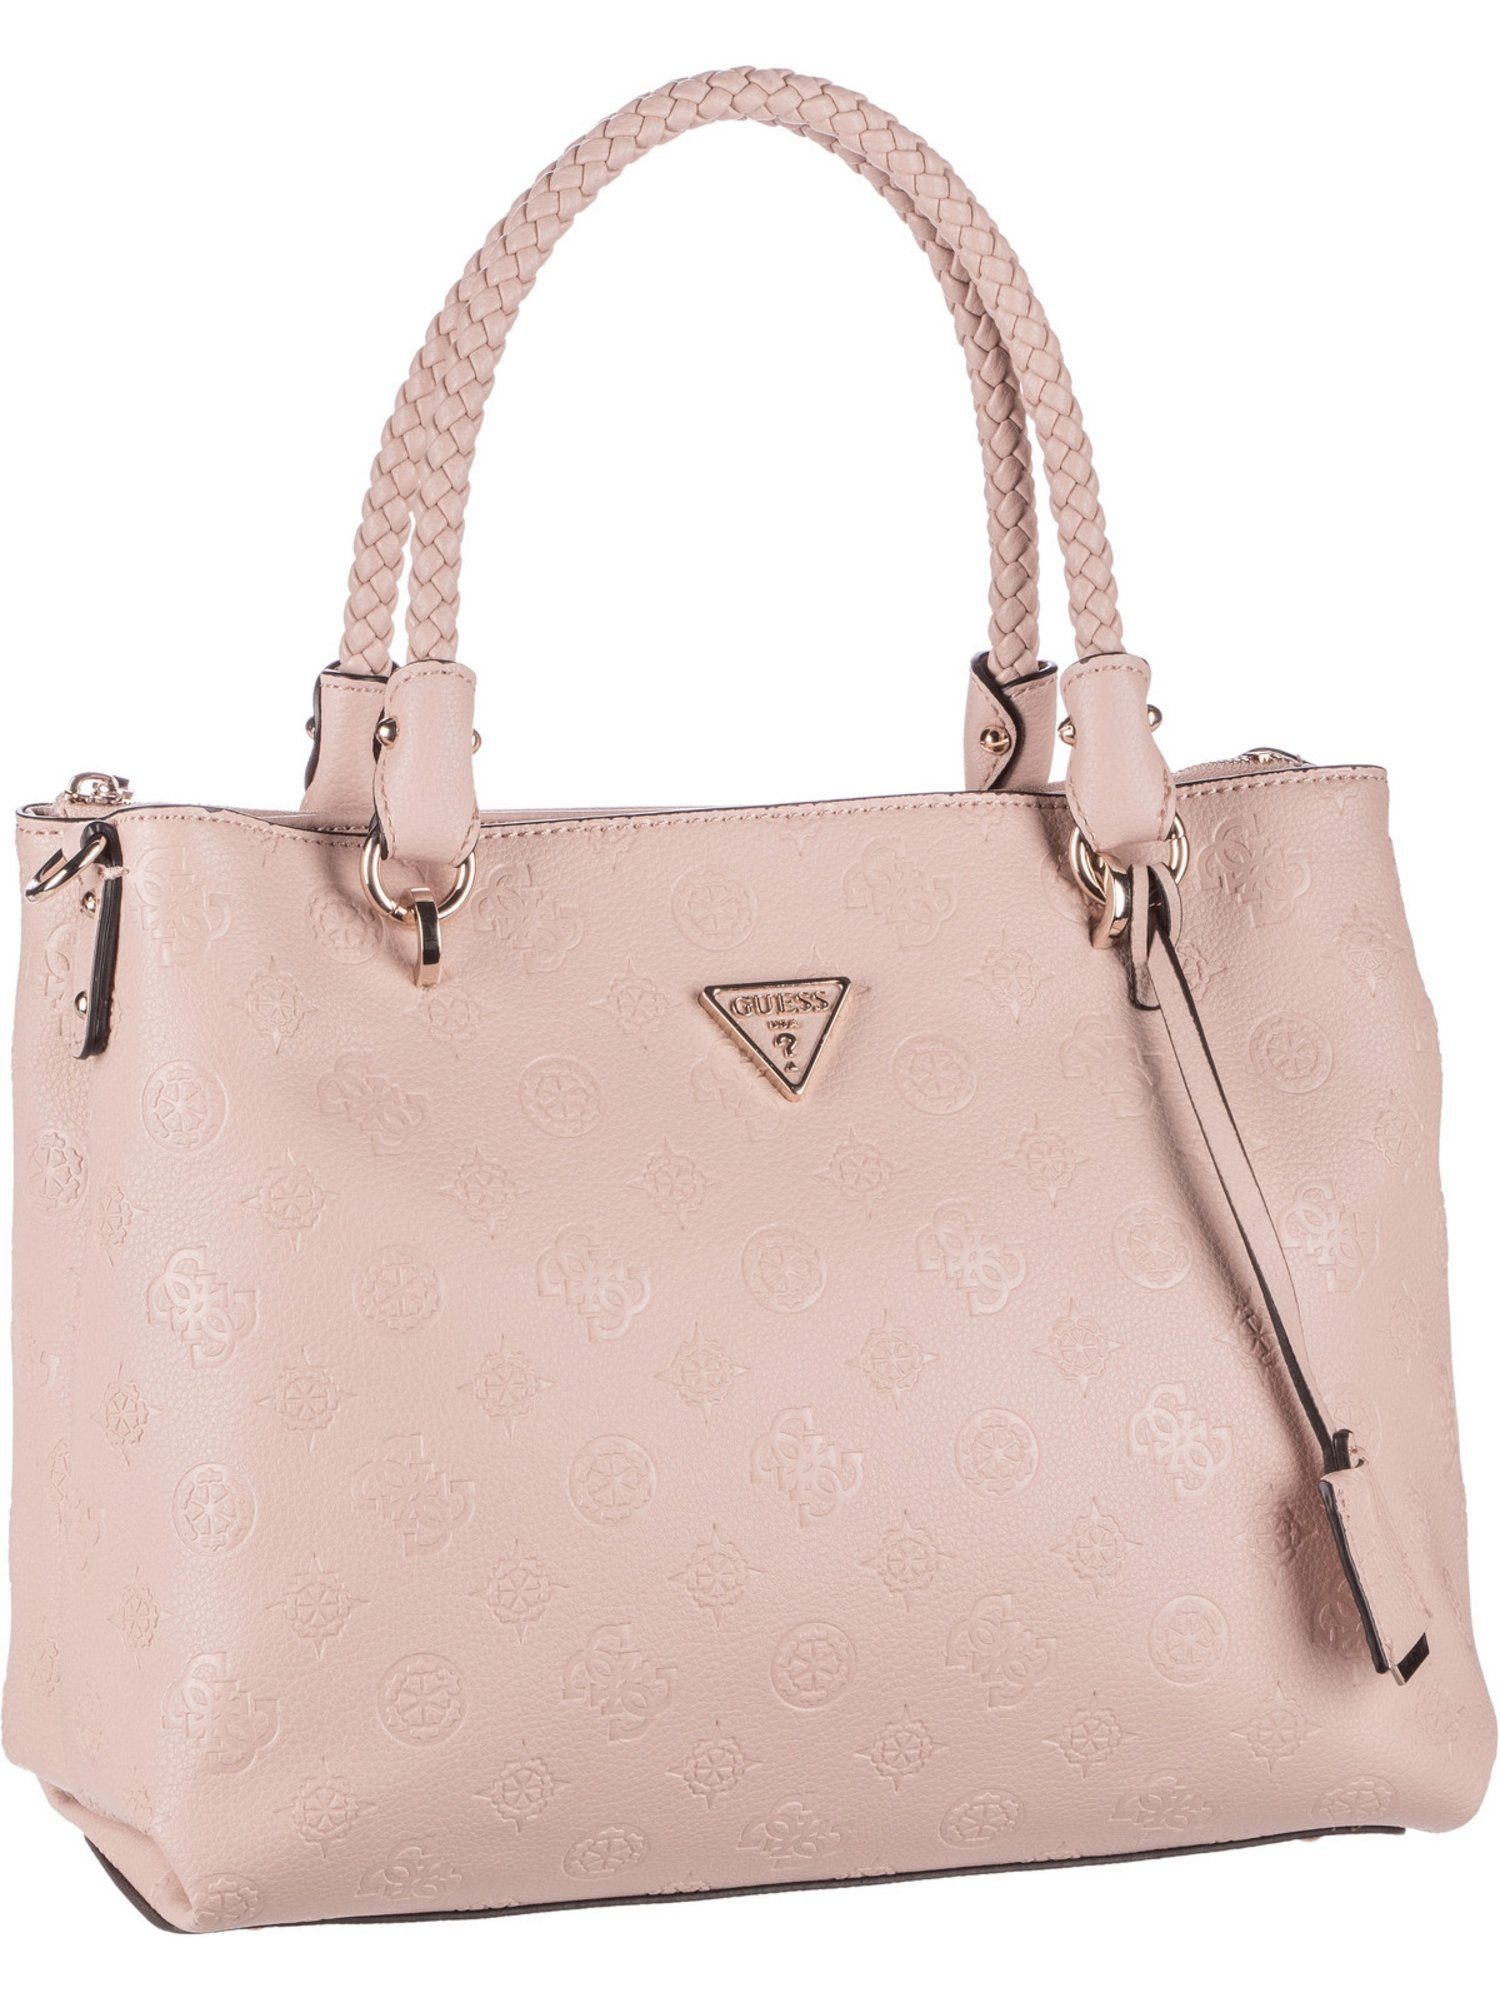 Guess Handtasche »Helaina Society Carryall«, Shopper online kaufen | OTTO